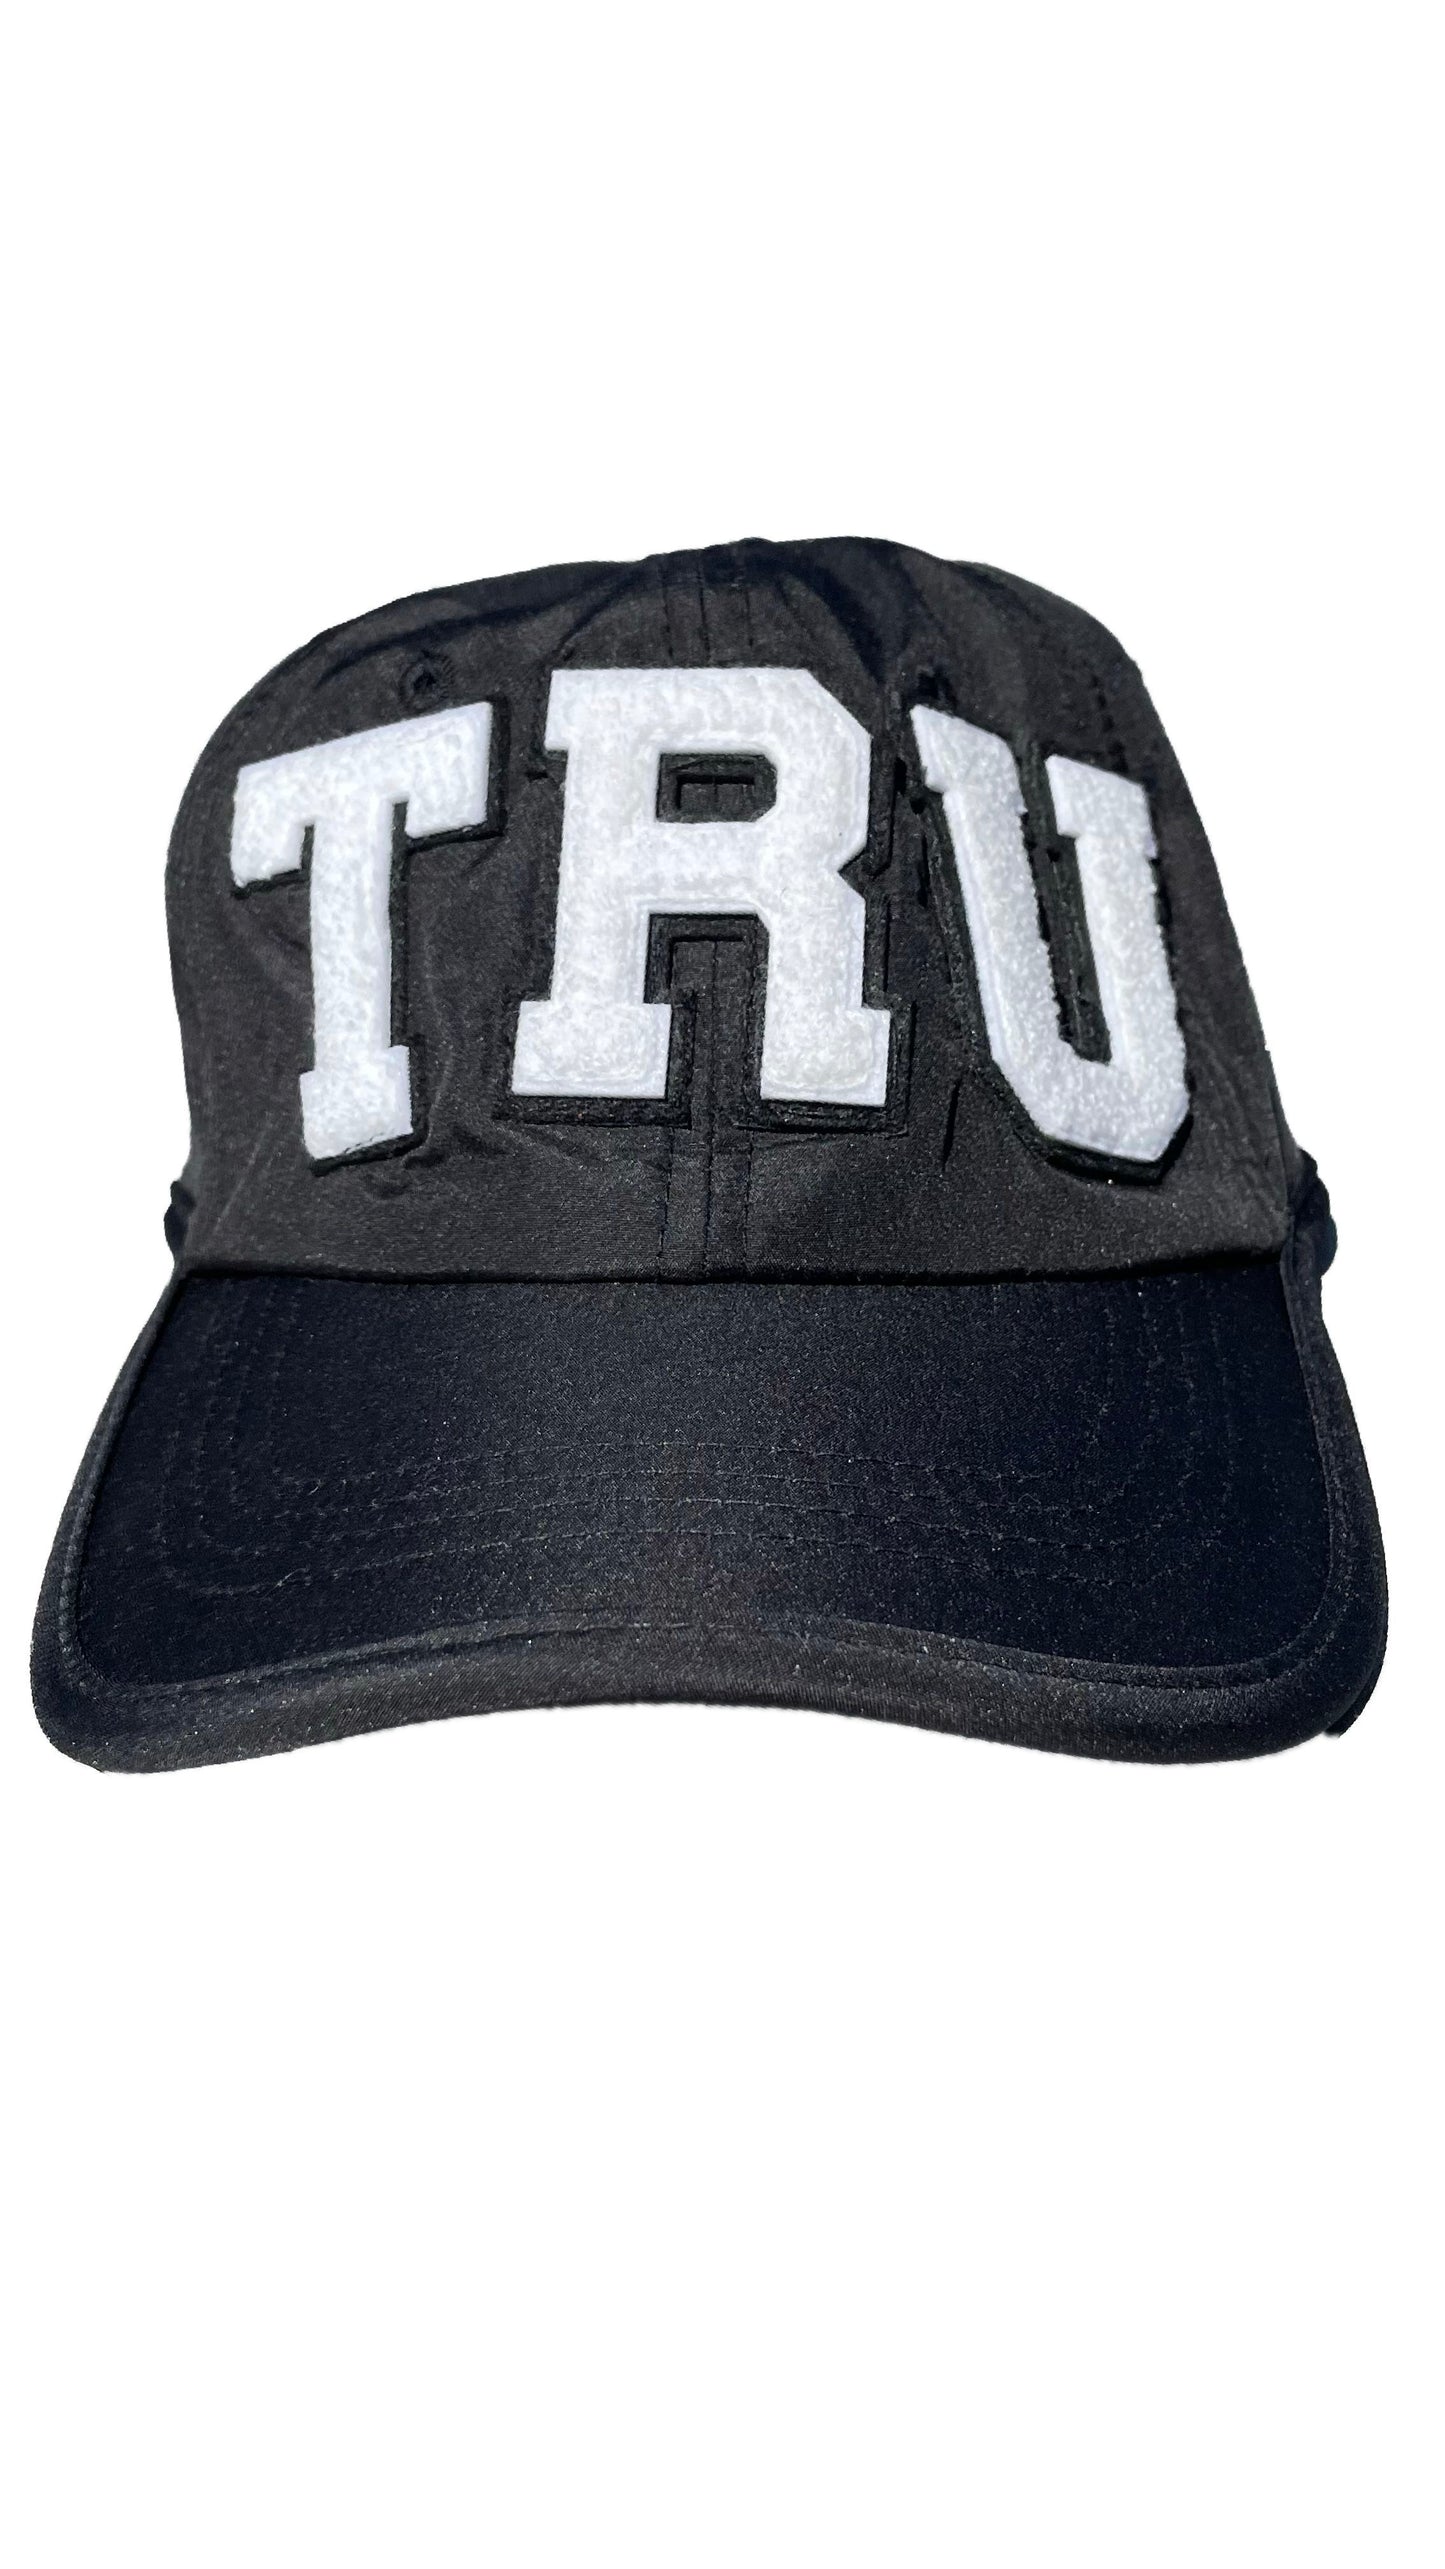 T R U Golf Caps